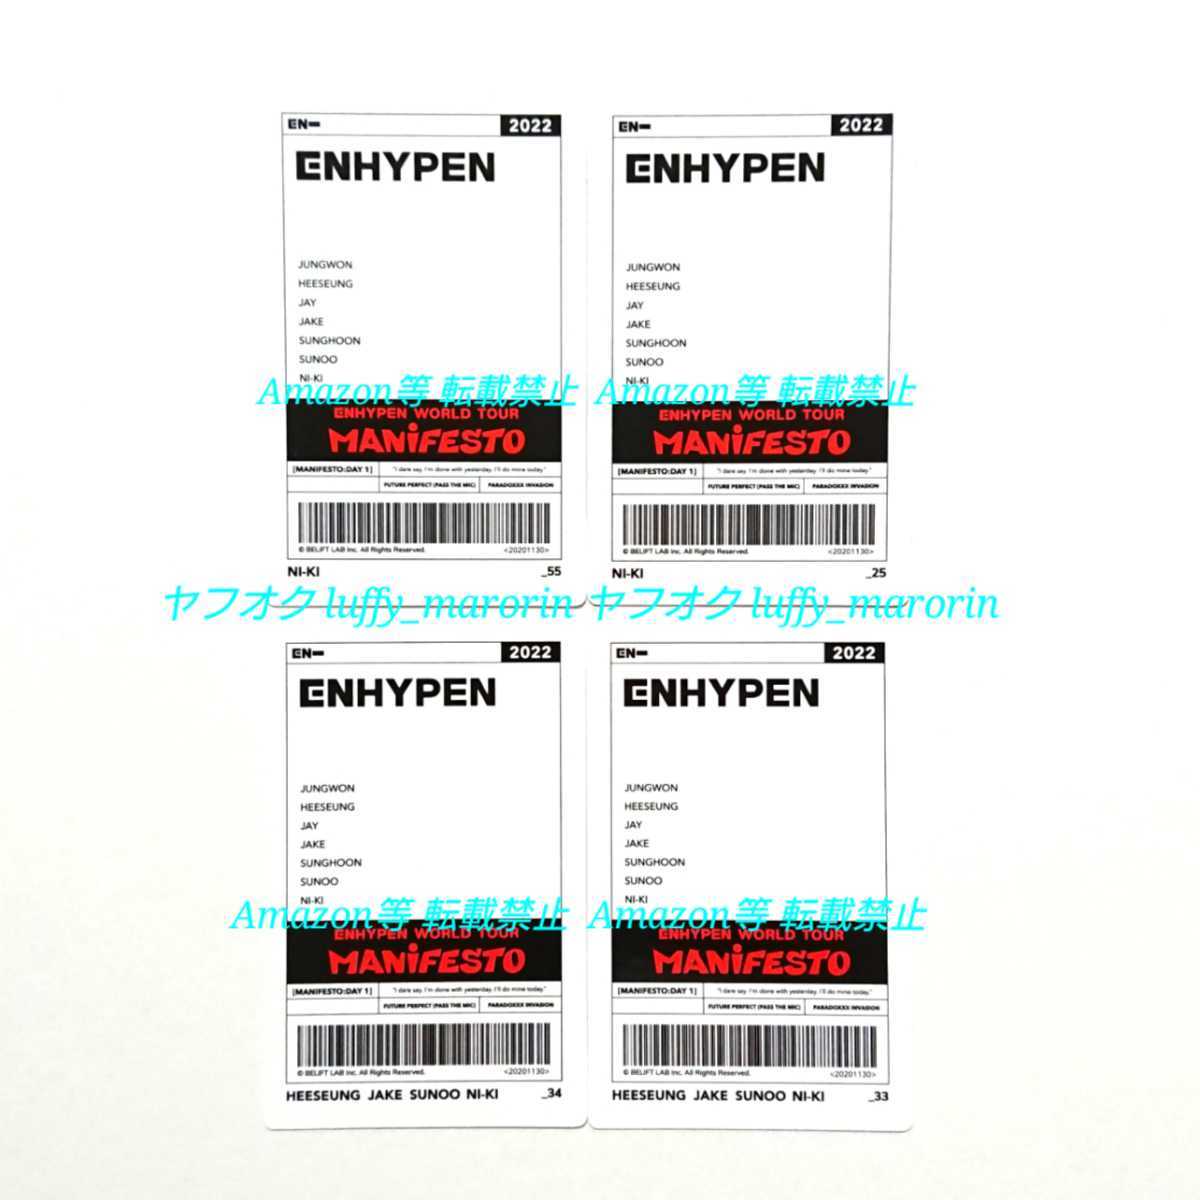 ENHYPEN WORLD TOUR MANiFESTO フォトカード トレカ ニキ ユニットカード ヒスン ジェイク ソヌ エンハイプン イプニ エナプ ワルツ